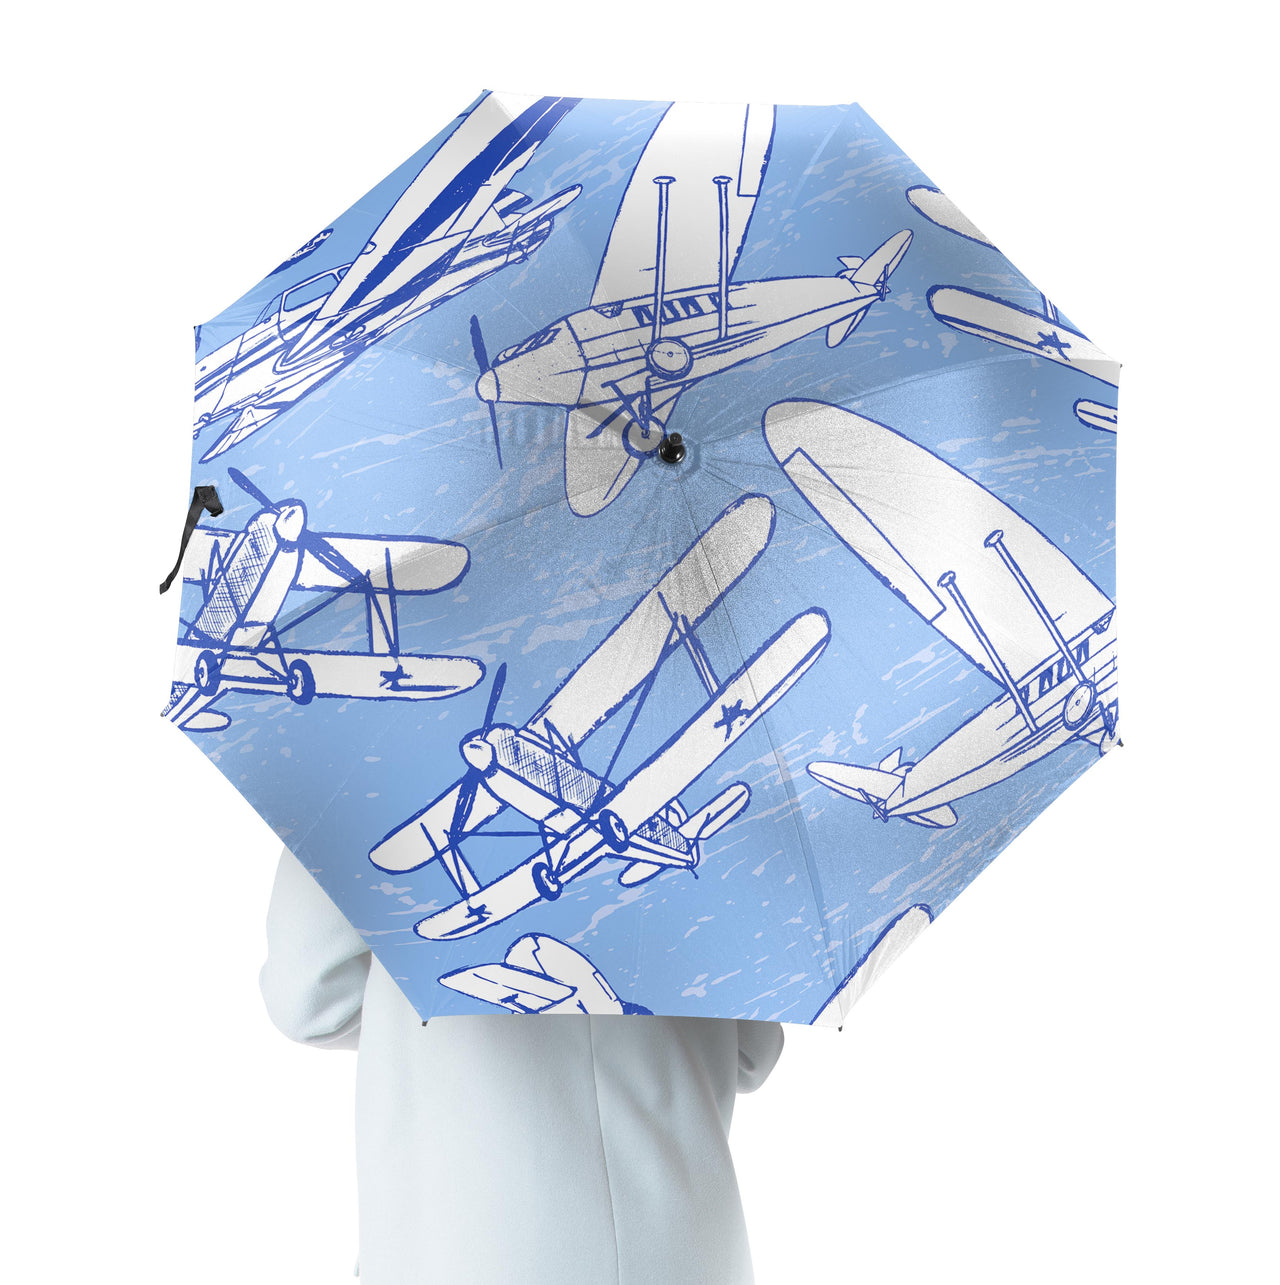 Retro & Vintage Airplanes Designed Umbrella